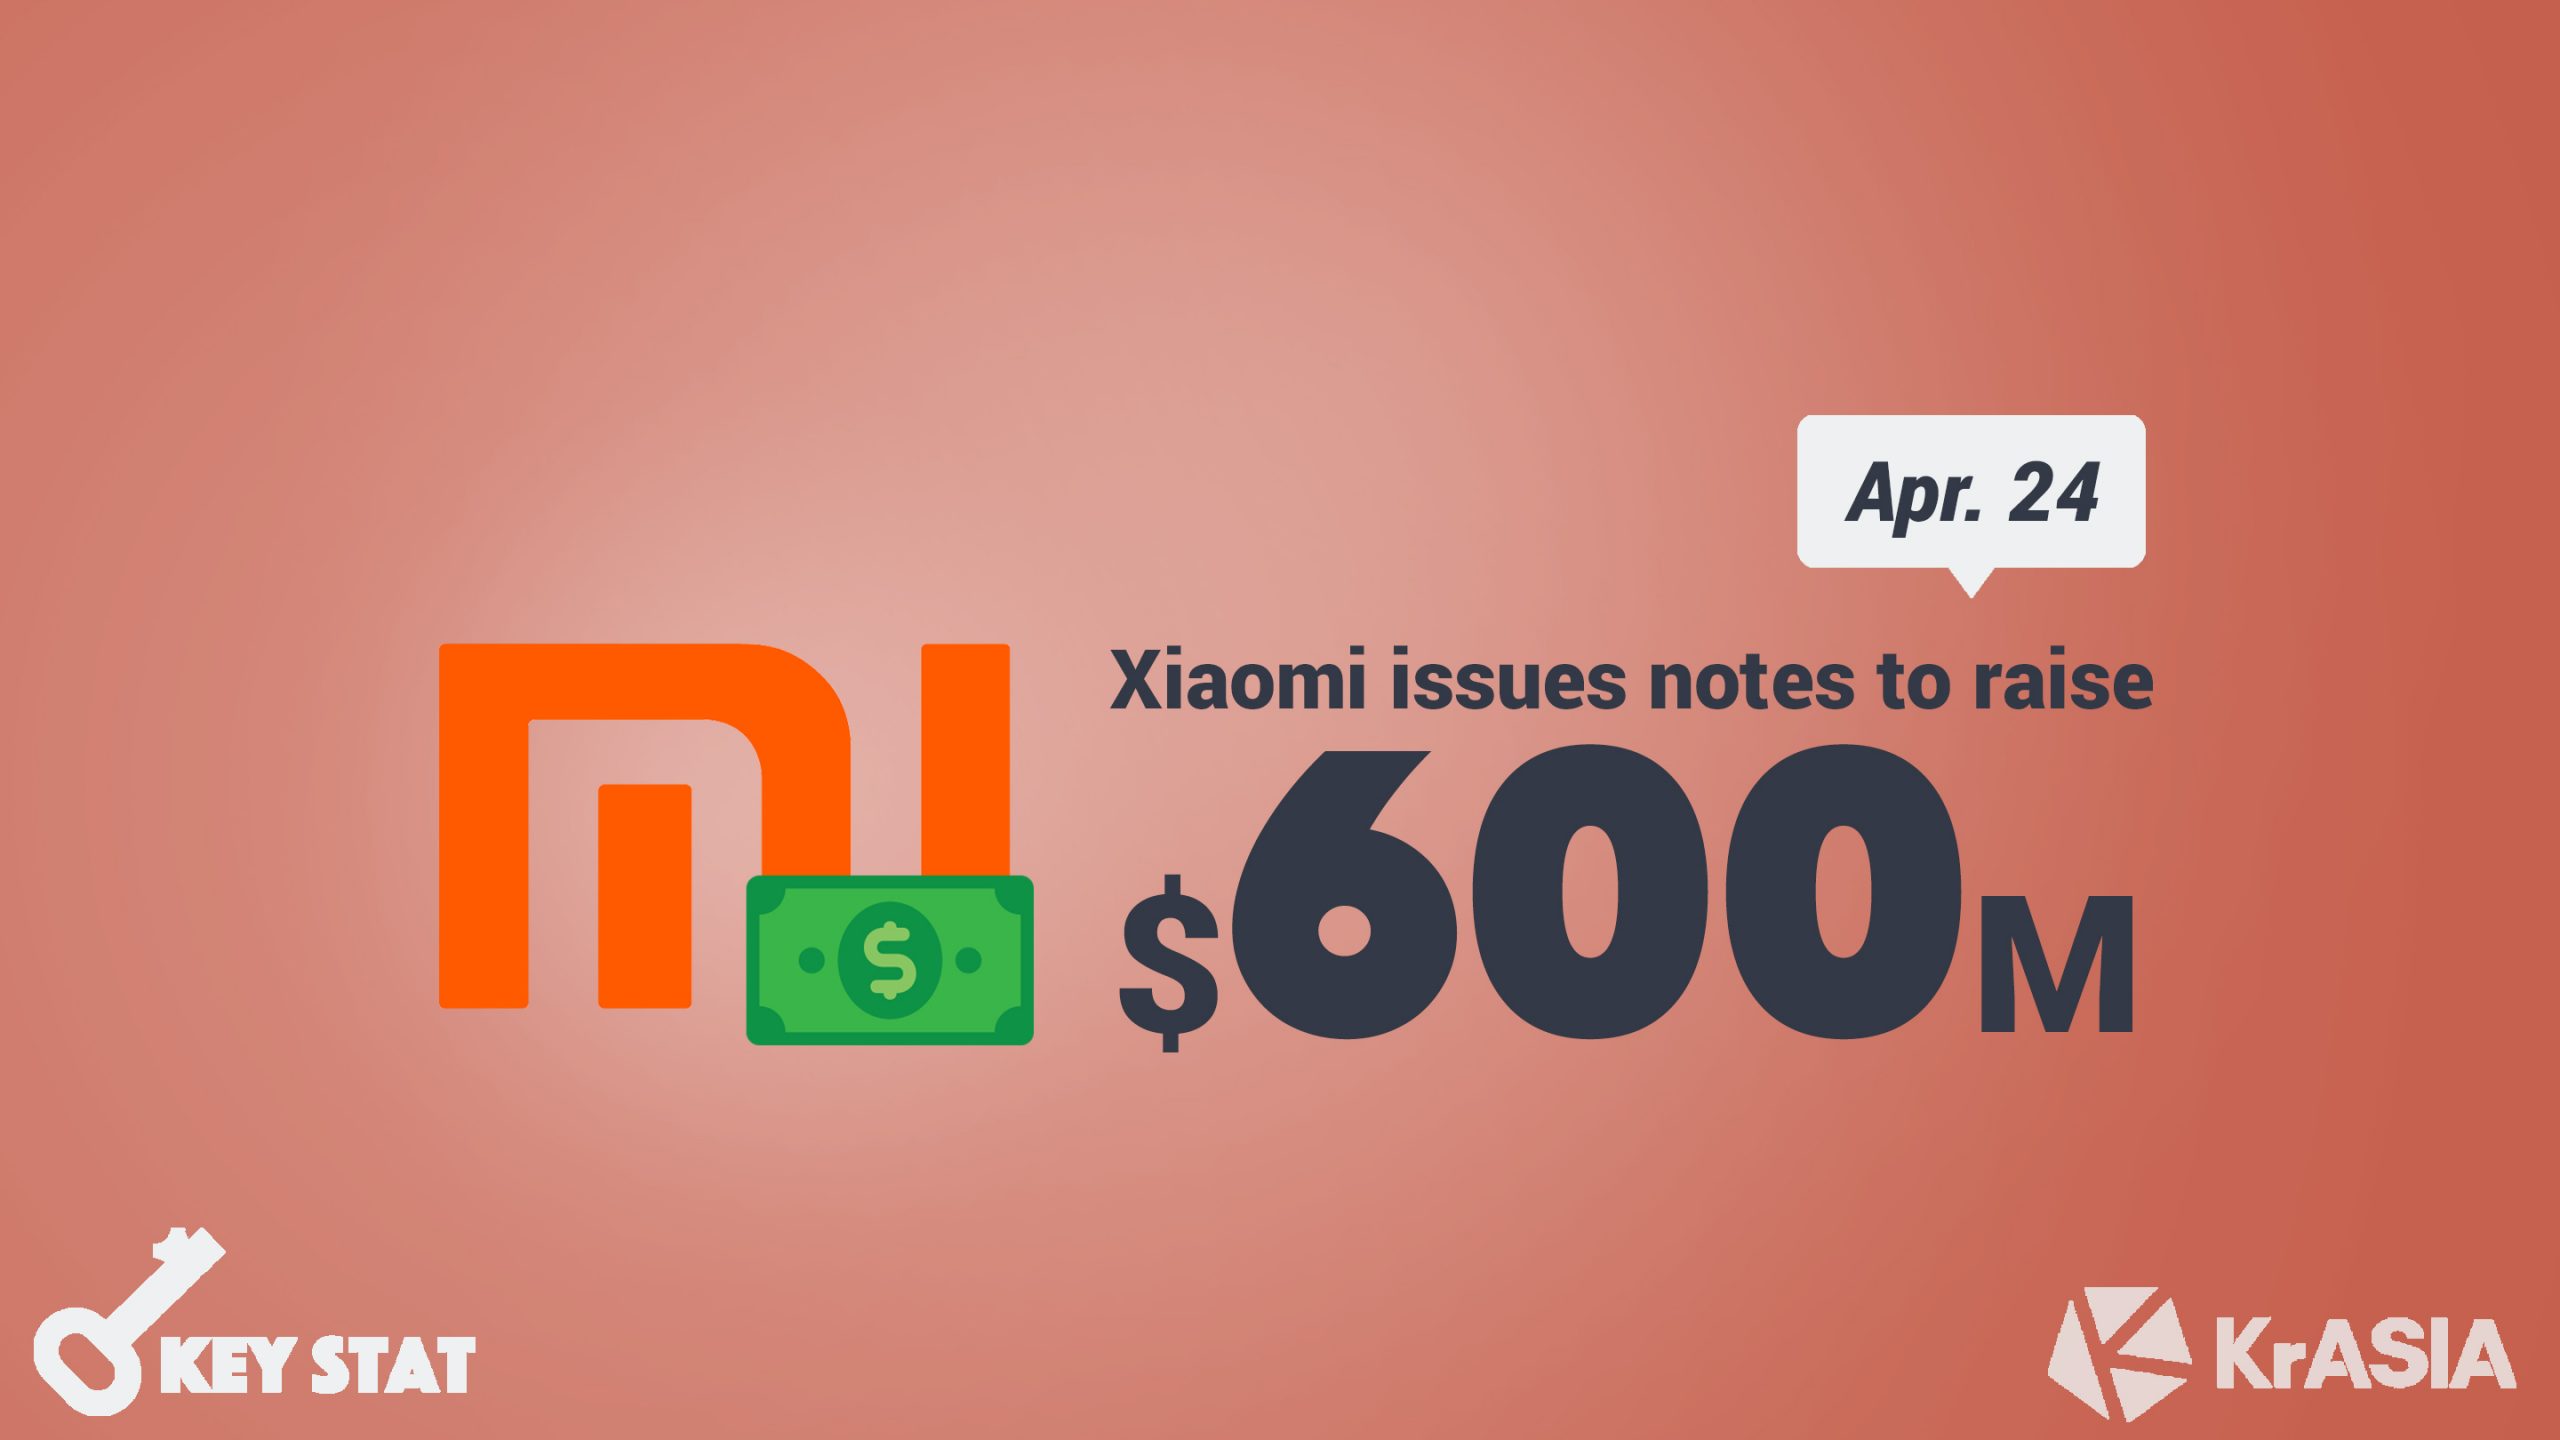 KEY STAT | Xiaomi to raise USD 600 million via senior notes